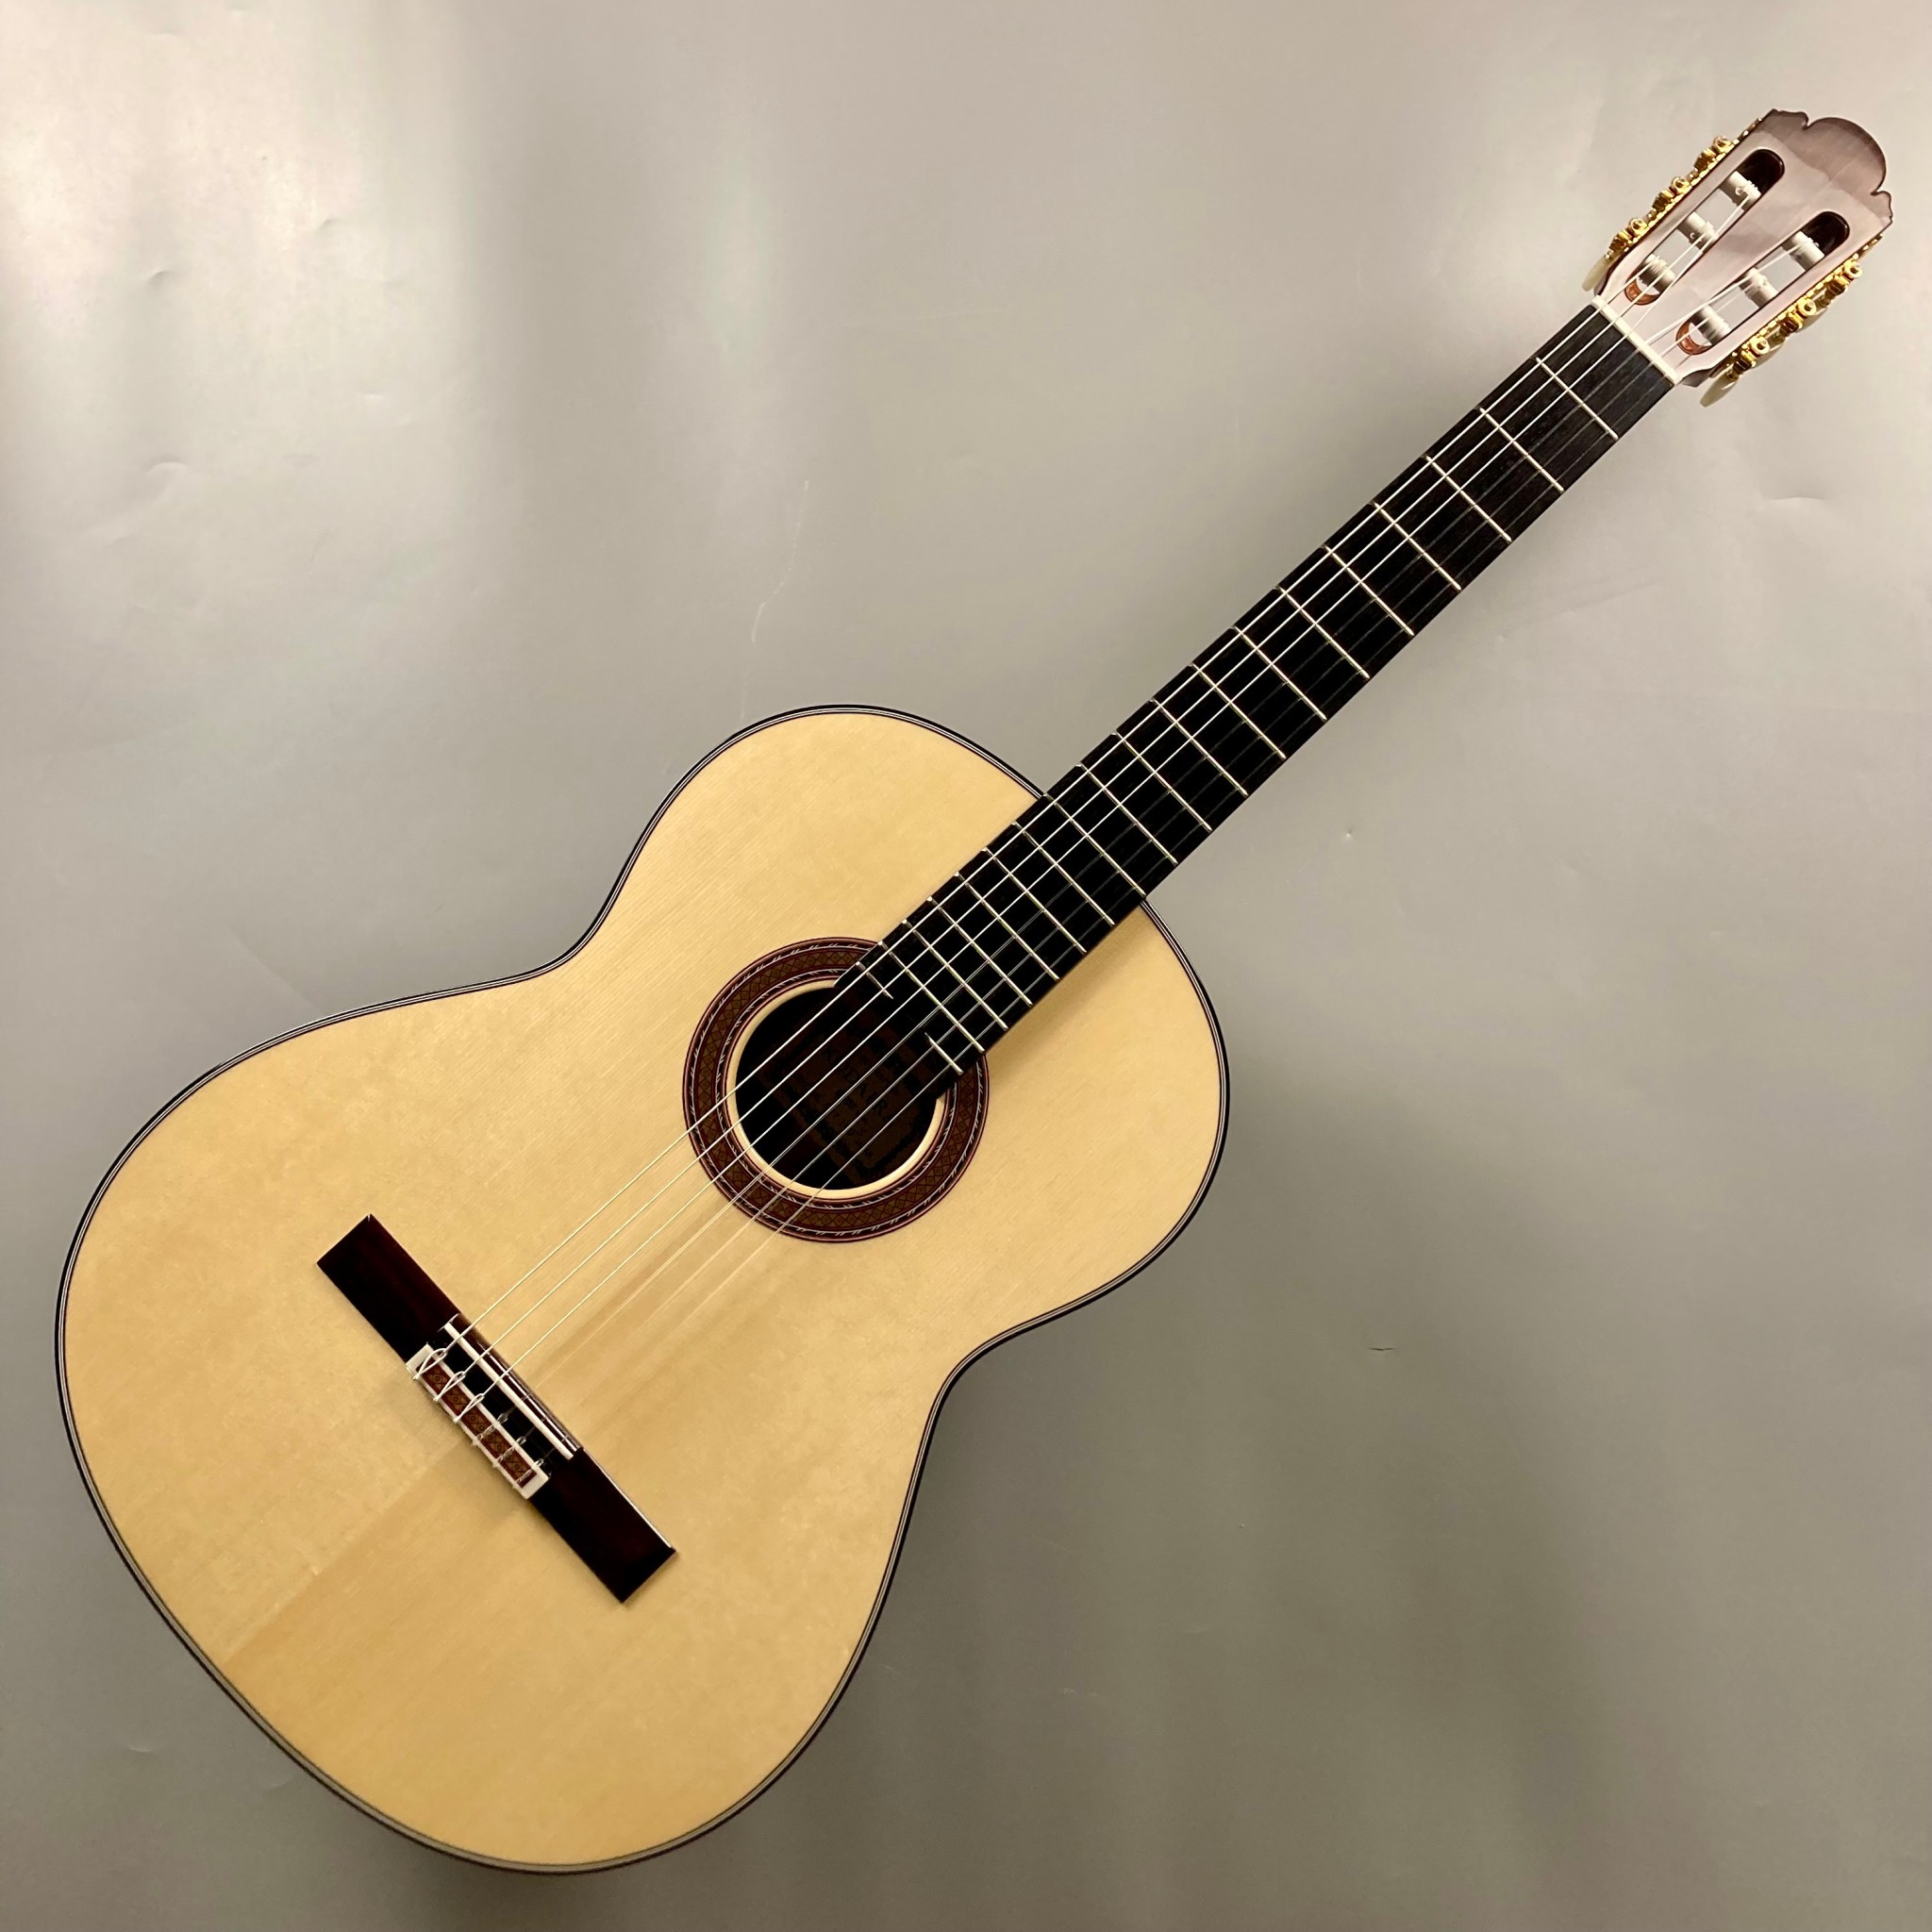 価値日本製クラシックギター小平ギターAST-50弦長650ミリ表面板杉単板、ハードケース付 本体